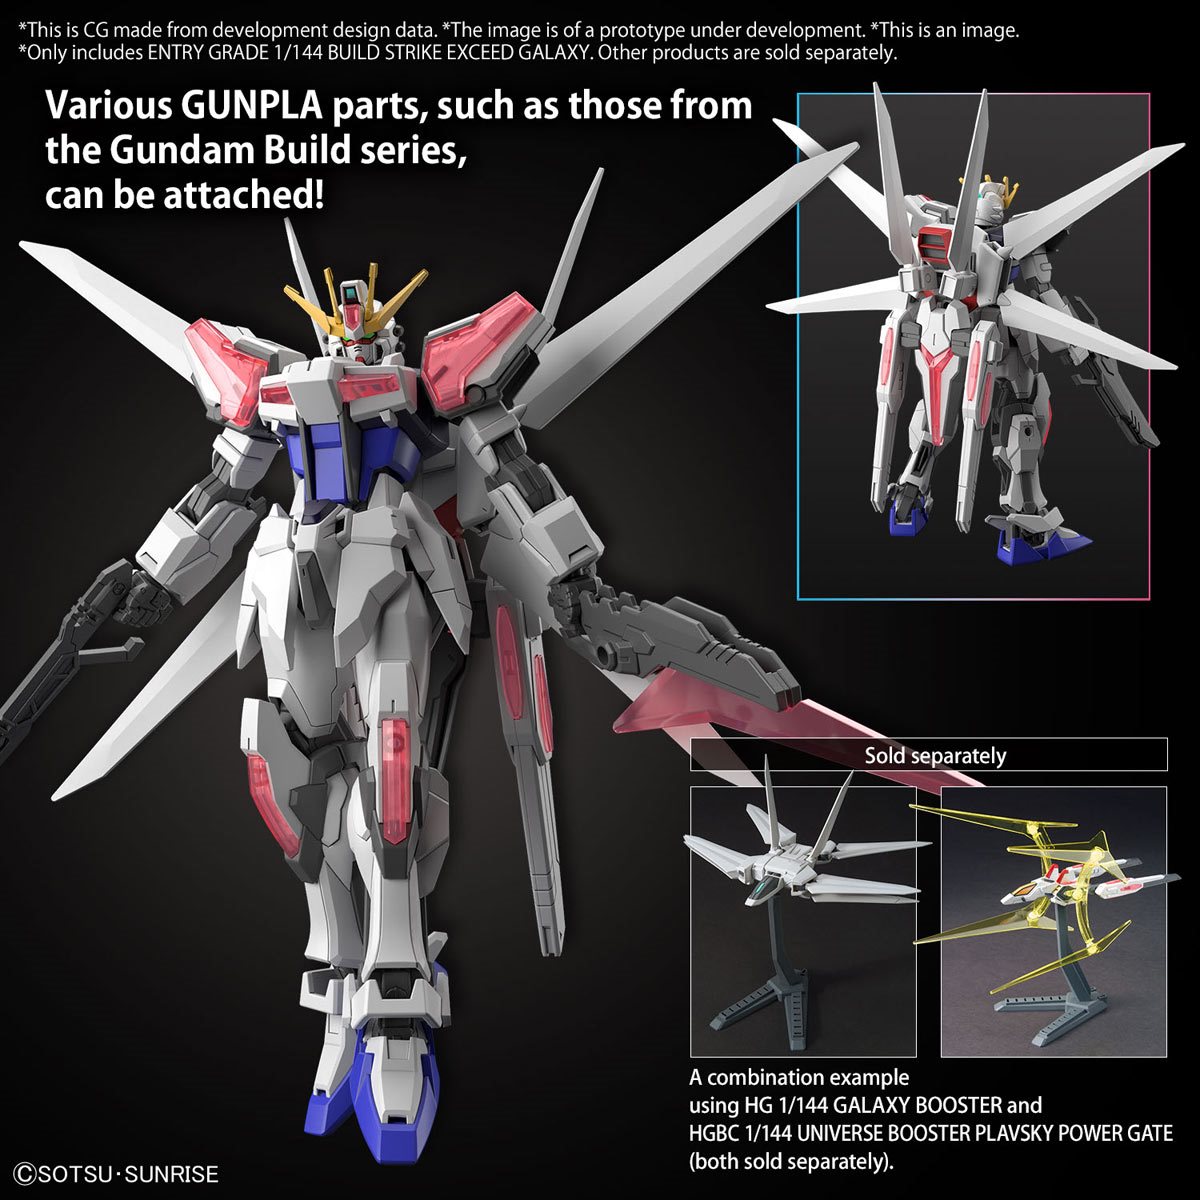 Gundam Build Metaverse Build Strike Exceed Galaxy Entry Grade 1:144 ...